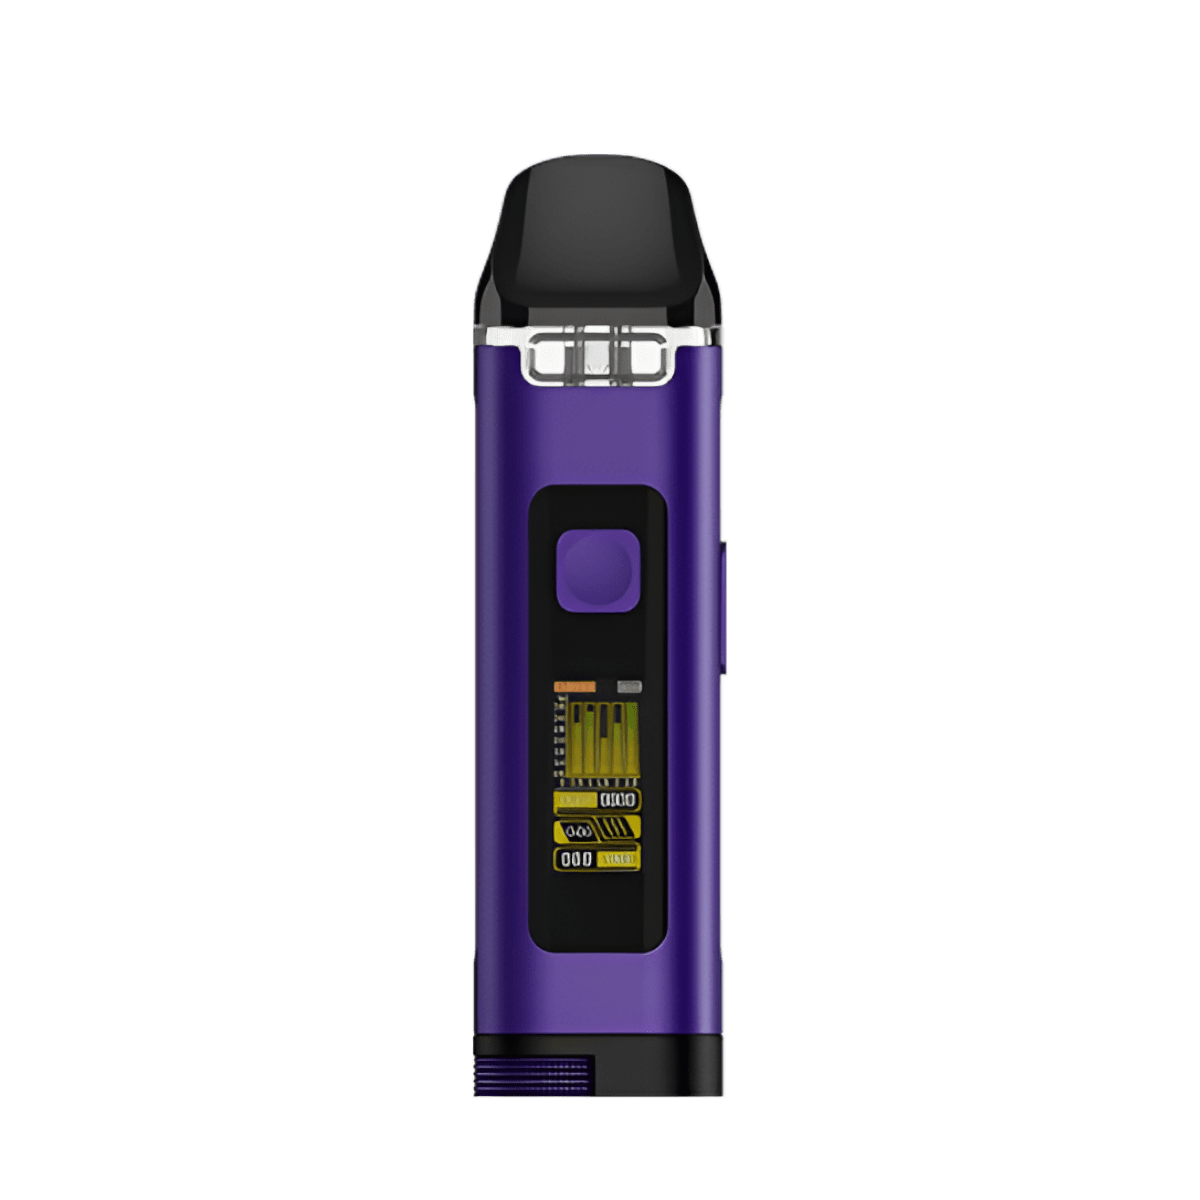 Uwell Crown D Pod-Mod Kit Purple  